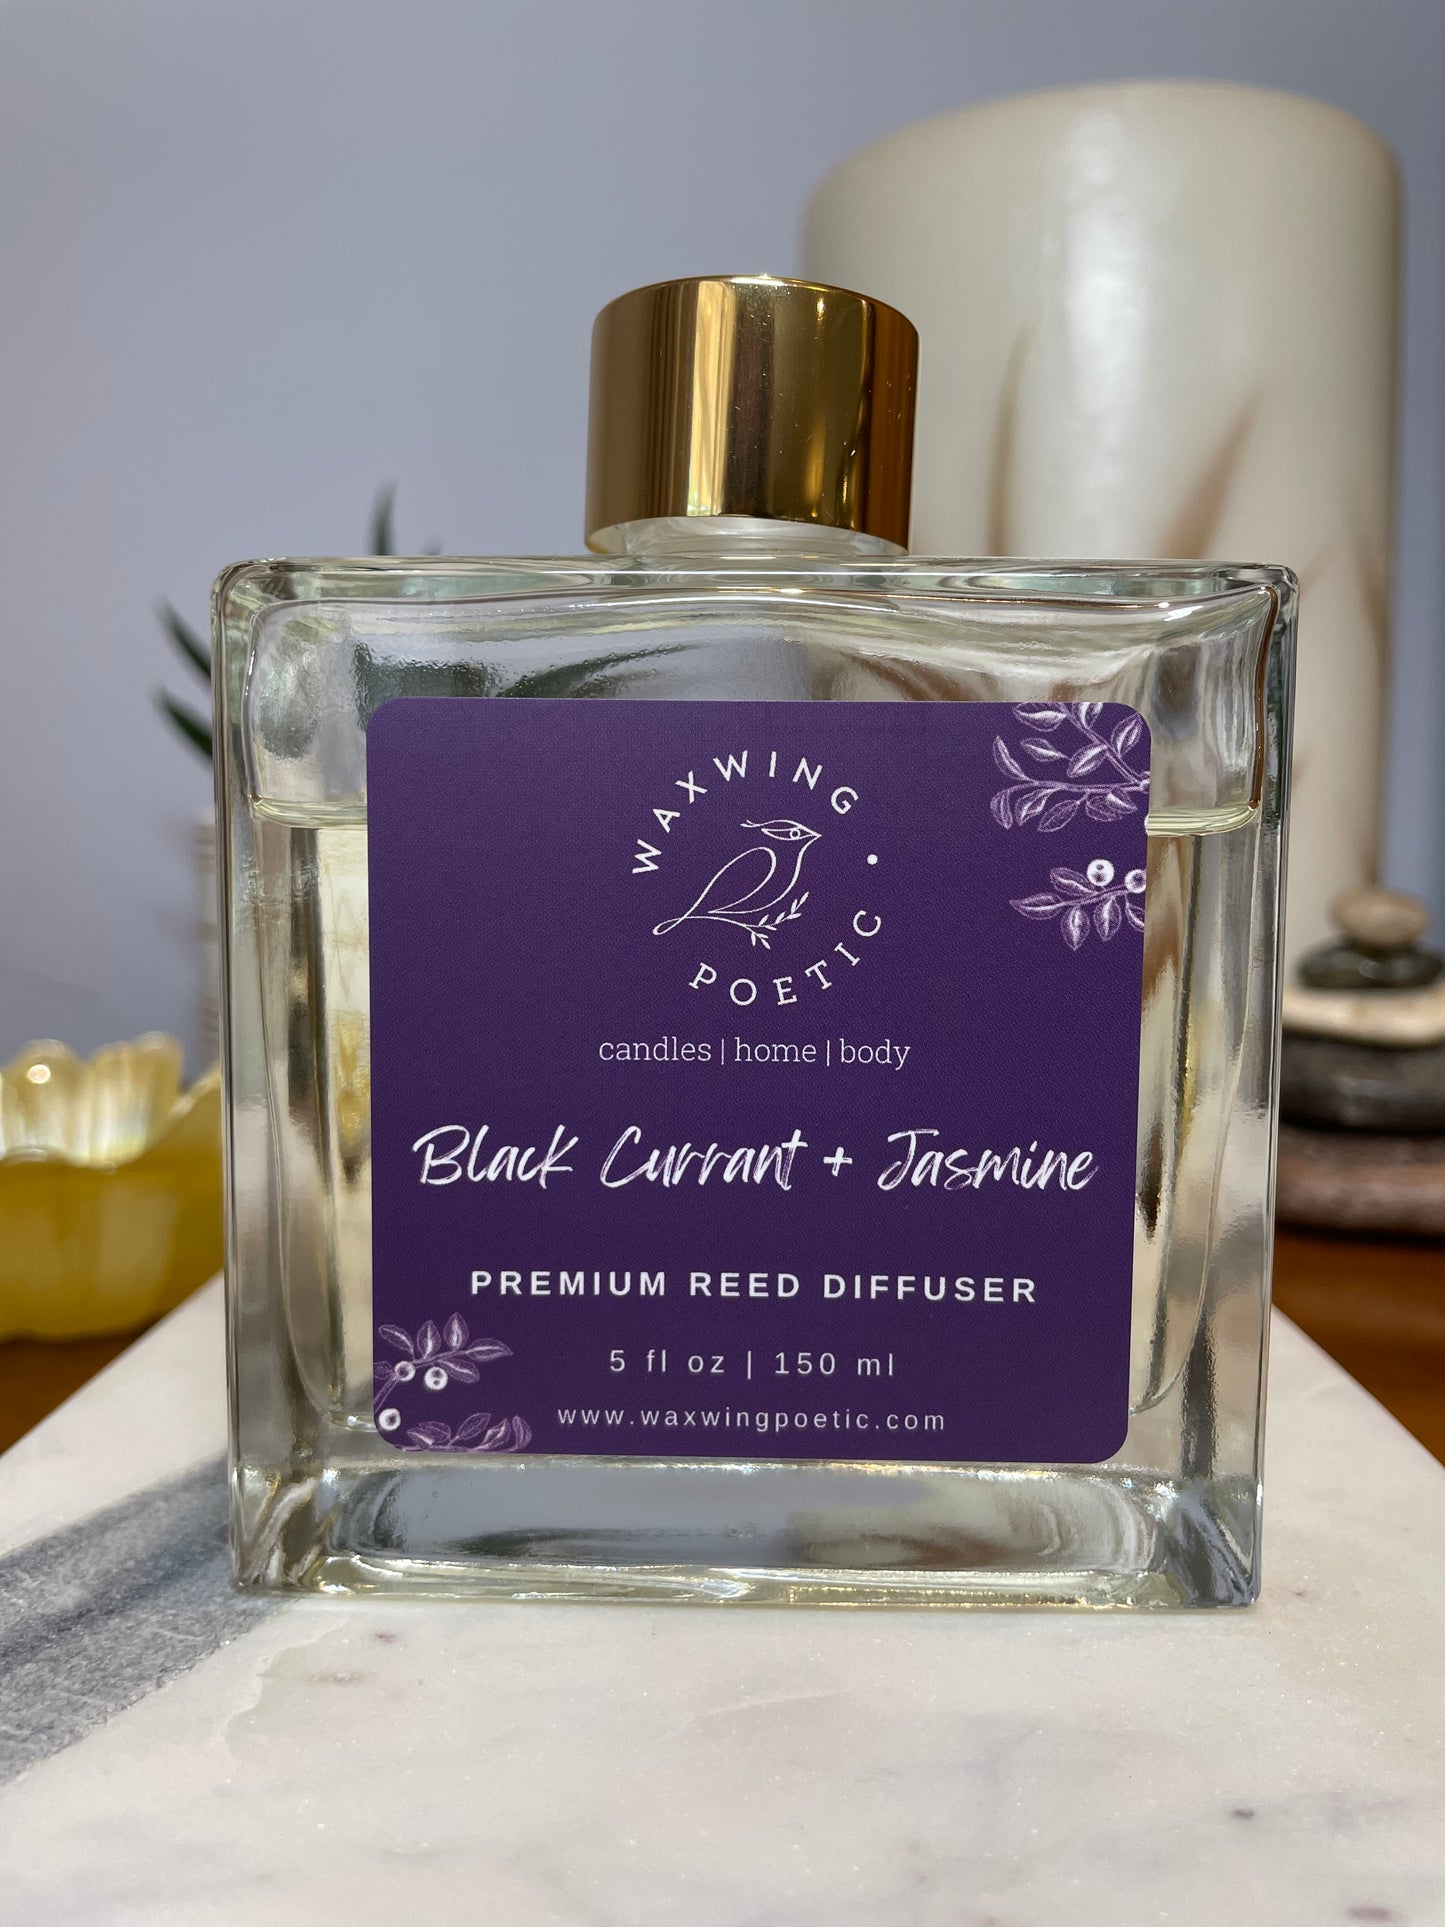 Black Currant + Jasmine | Premium Reed Diffuser